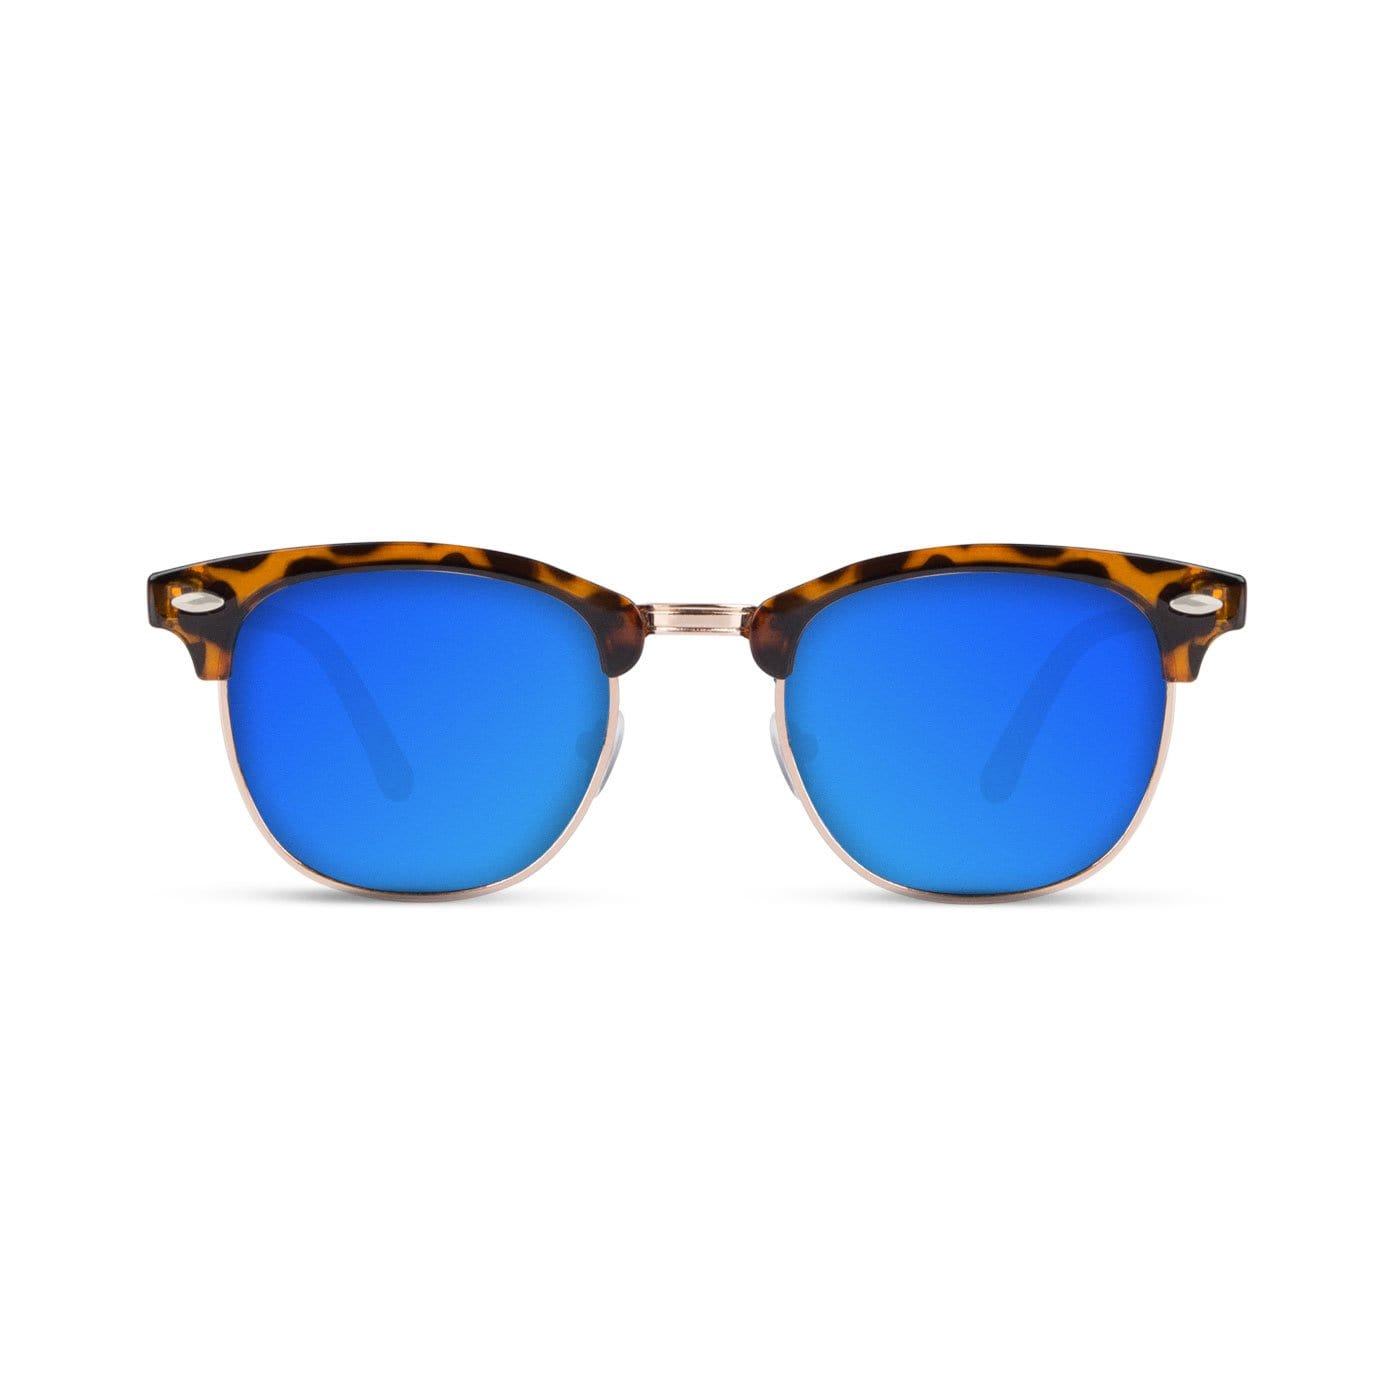 Malaca Shinny Carey Gold / Blue Sunglasses